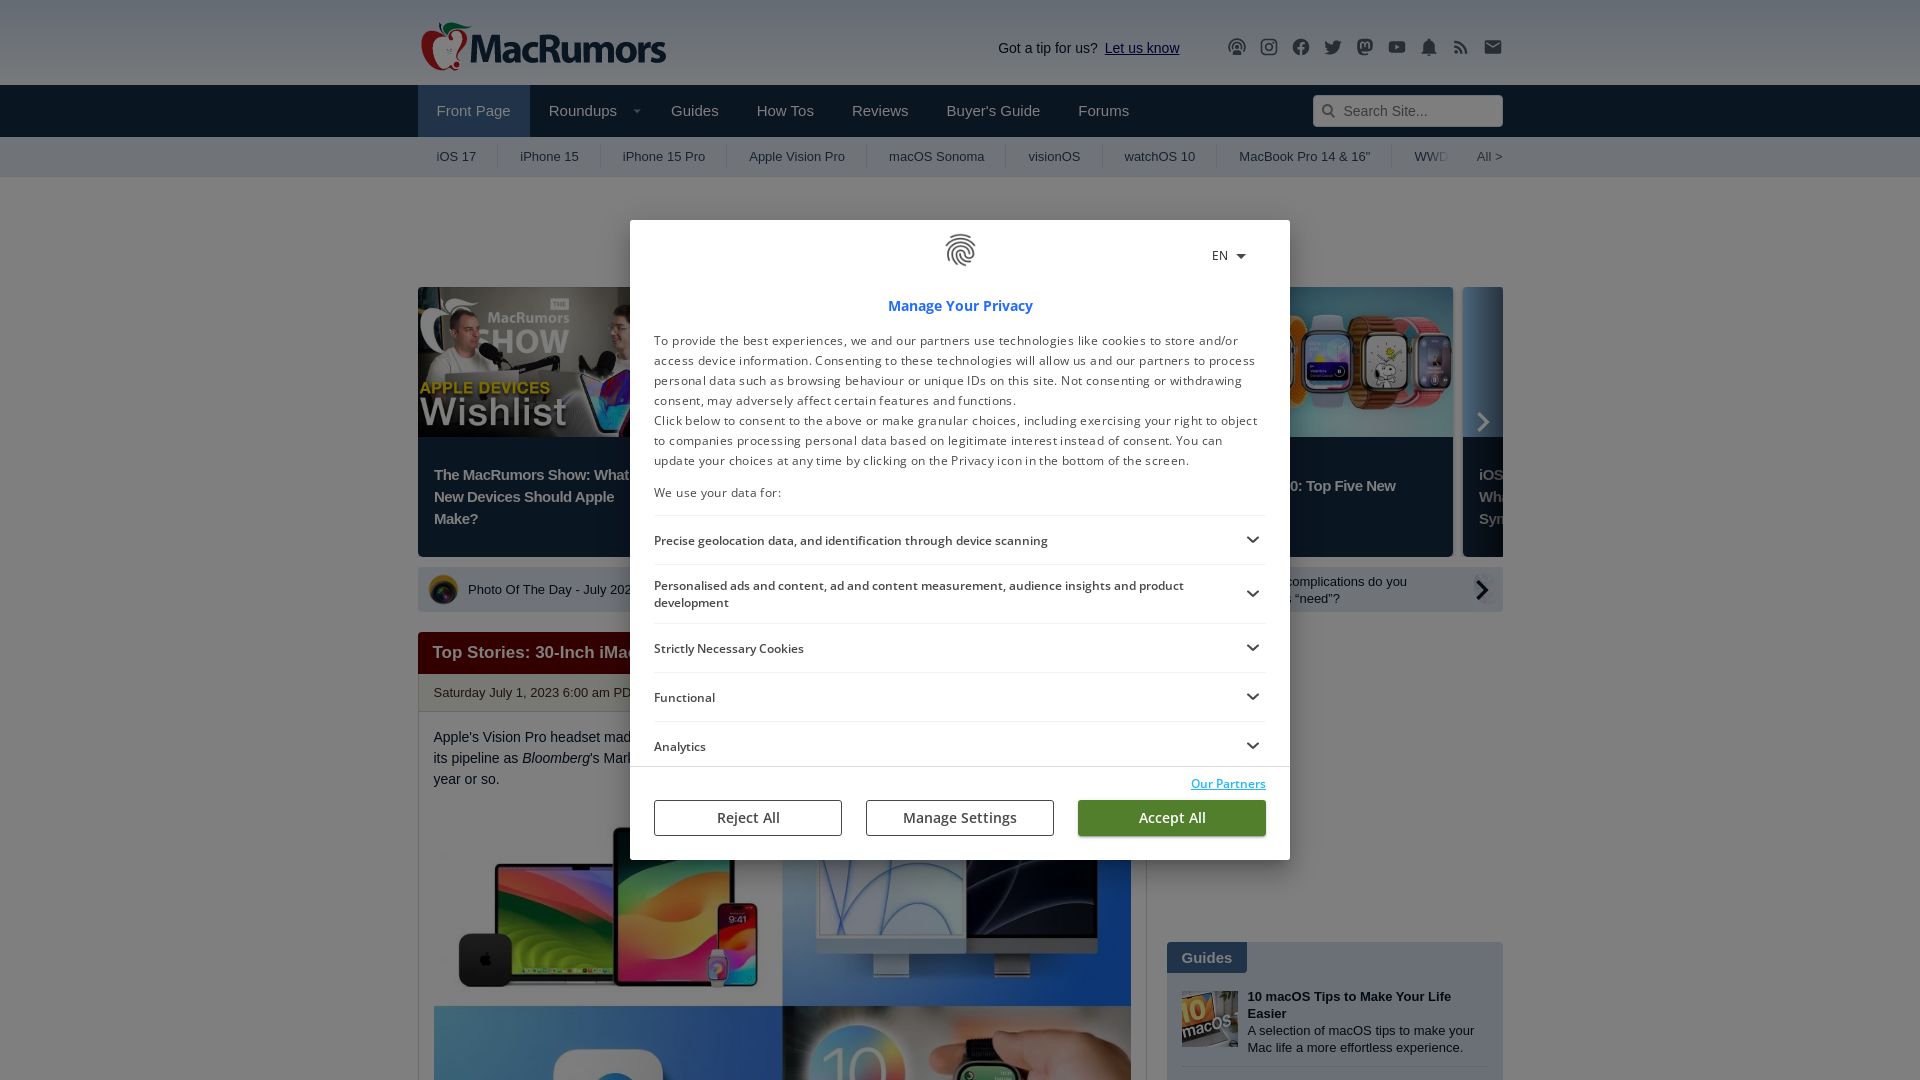 Status do site macrumors.com está   ONLINE